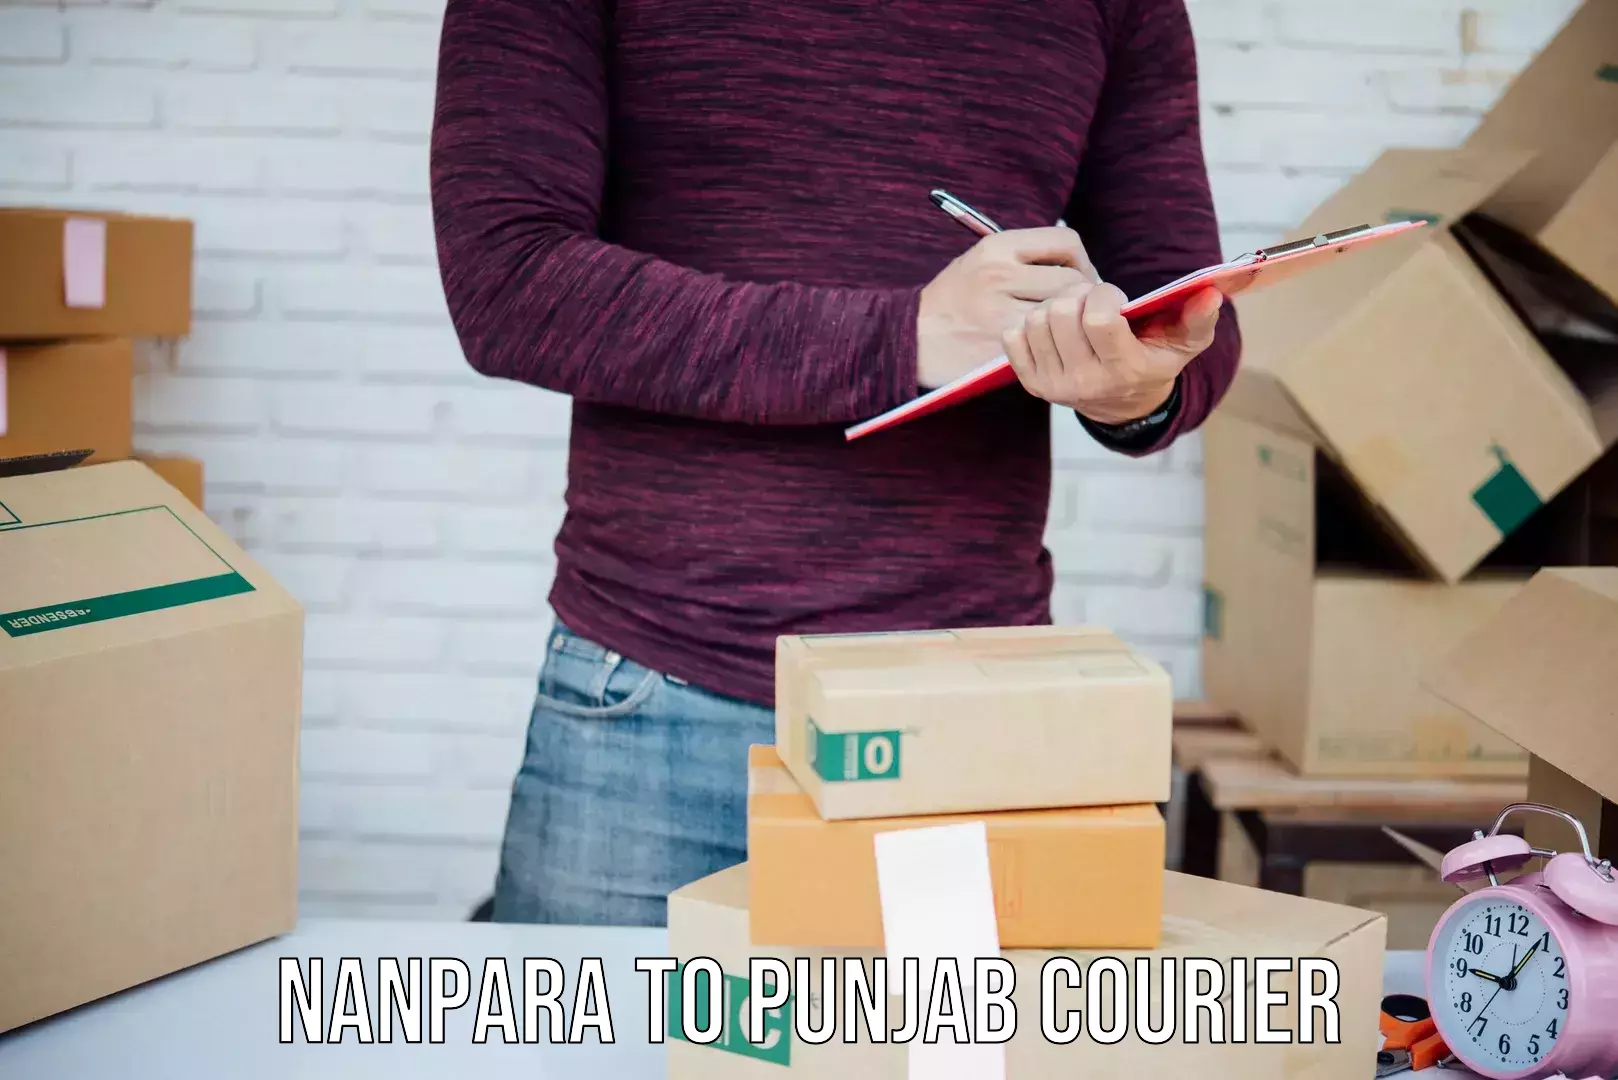 User-friendly delivery service Nanpara to Nangal